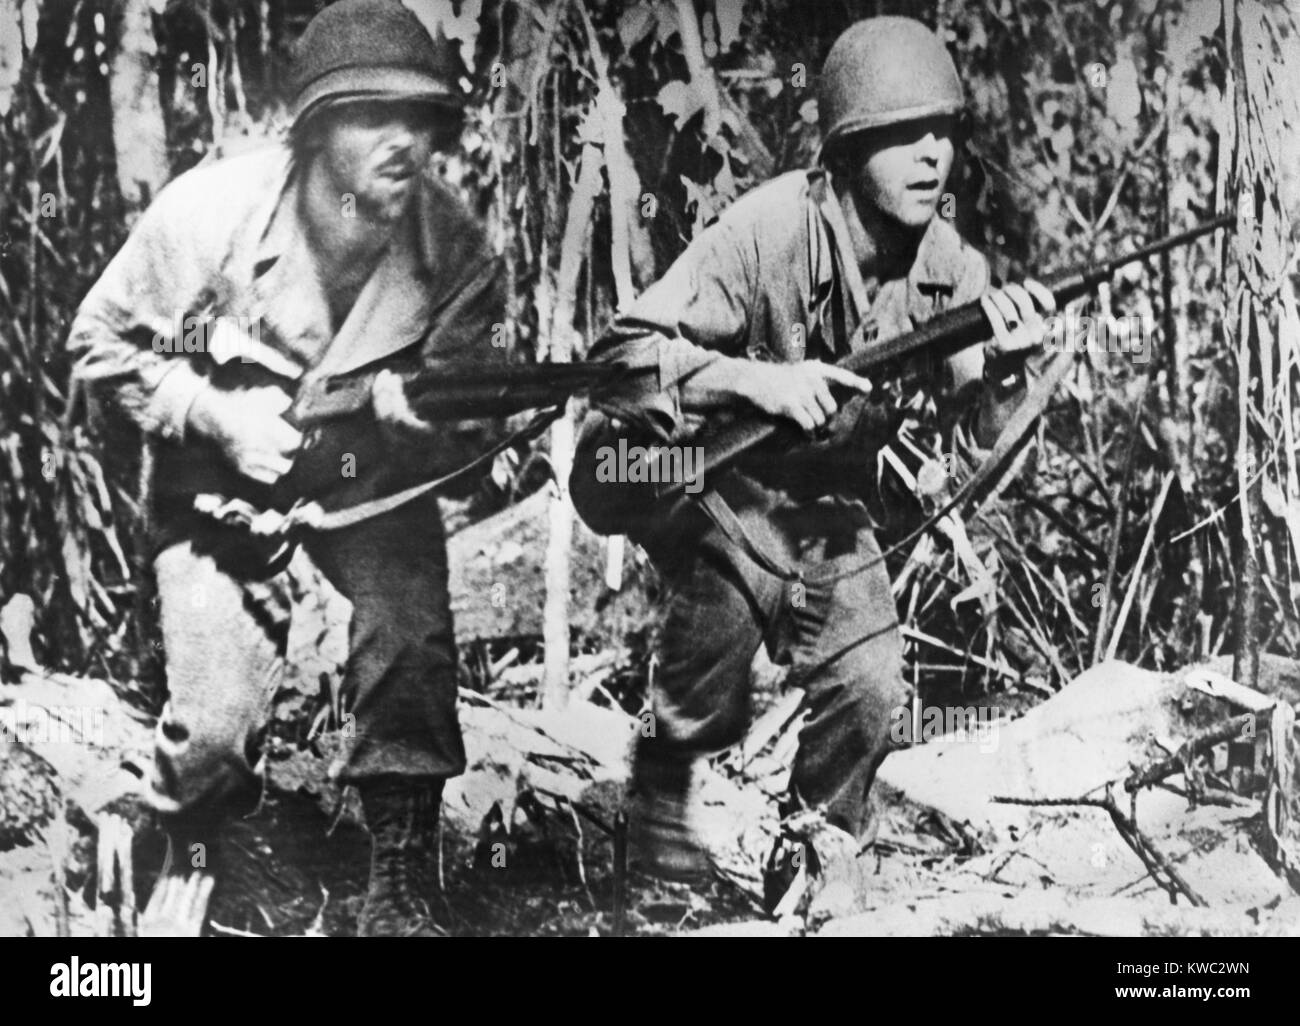 Zwei US-Soldaten, auf Bougainville, während der japanische Angriff im März 1944. Die Belastung zeigt auf ihren Gesichtern, als sie in Dicken, in denen die japanische Scharfschützen aktiv sind. Weltkrieg 2 (BSLOC 2015 13 124) Stockfoto